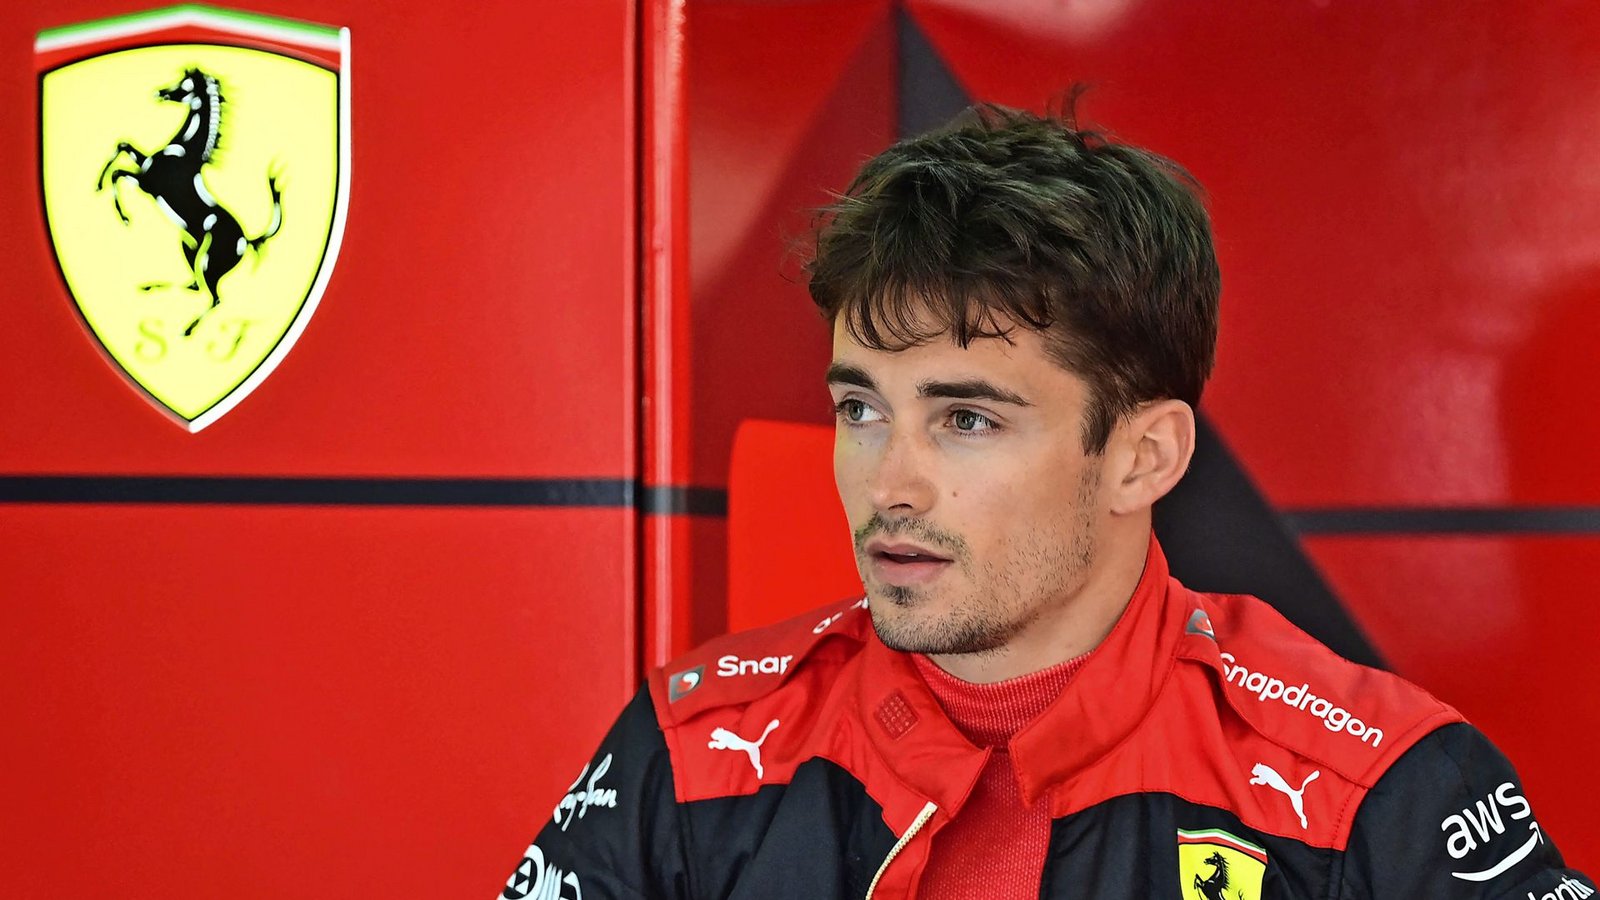 Kein Ferrari-Mann auf dem Podium in Imola: Charles Leclerc patzte kurz vor Schluss und wurde nur Sechster.Foto: AFP/MIGUEL MEDINA